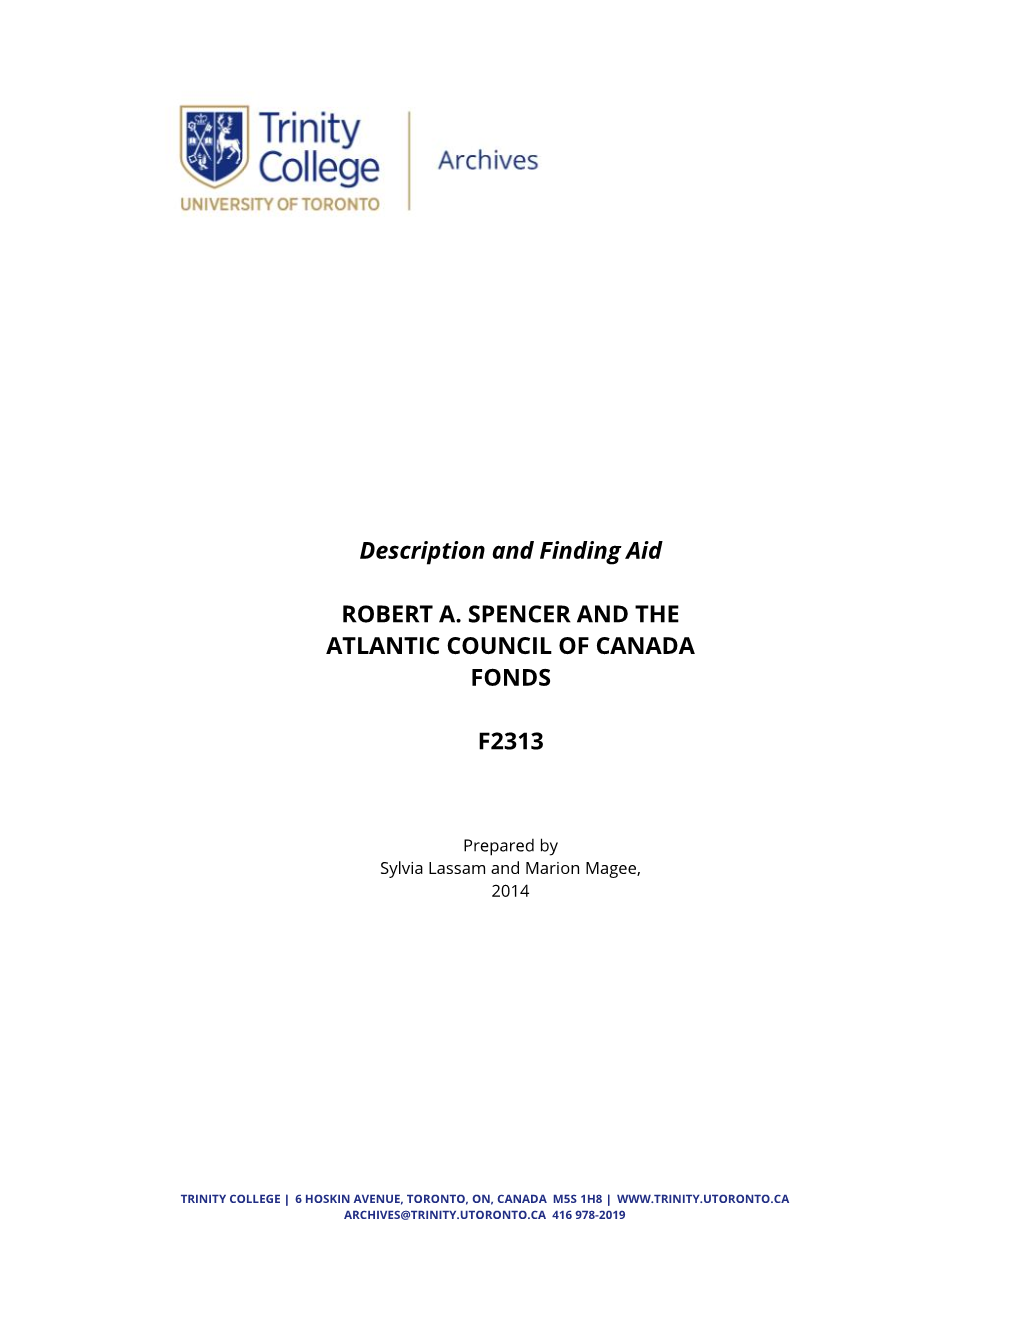 Atlantic Council of Canada F2313